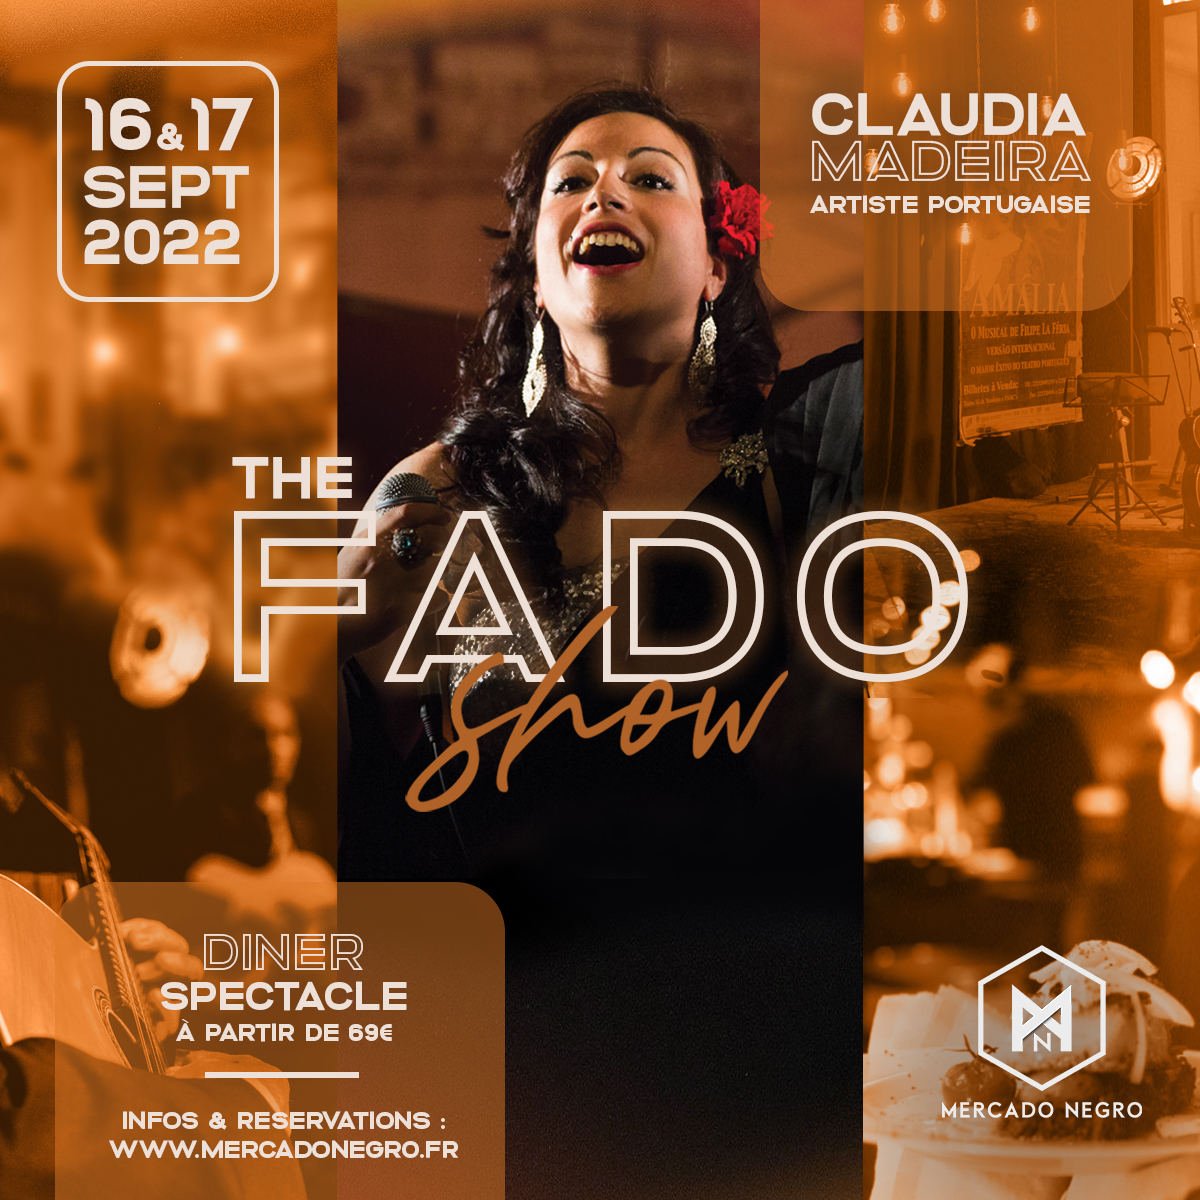 THE FADO SHOW - Claudia Madeira